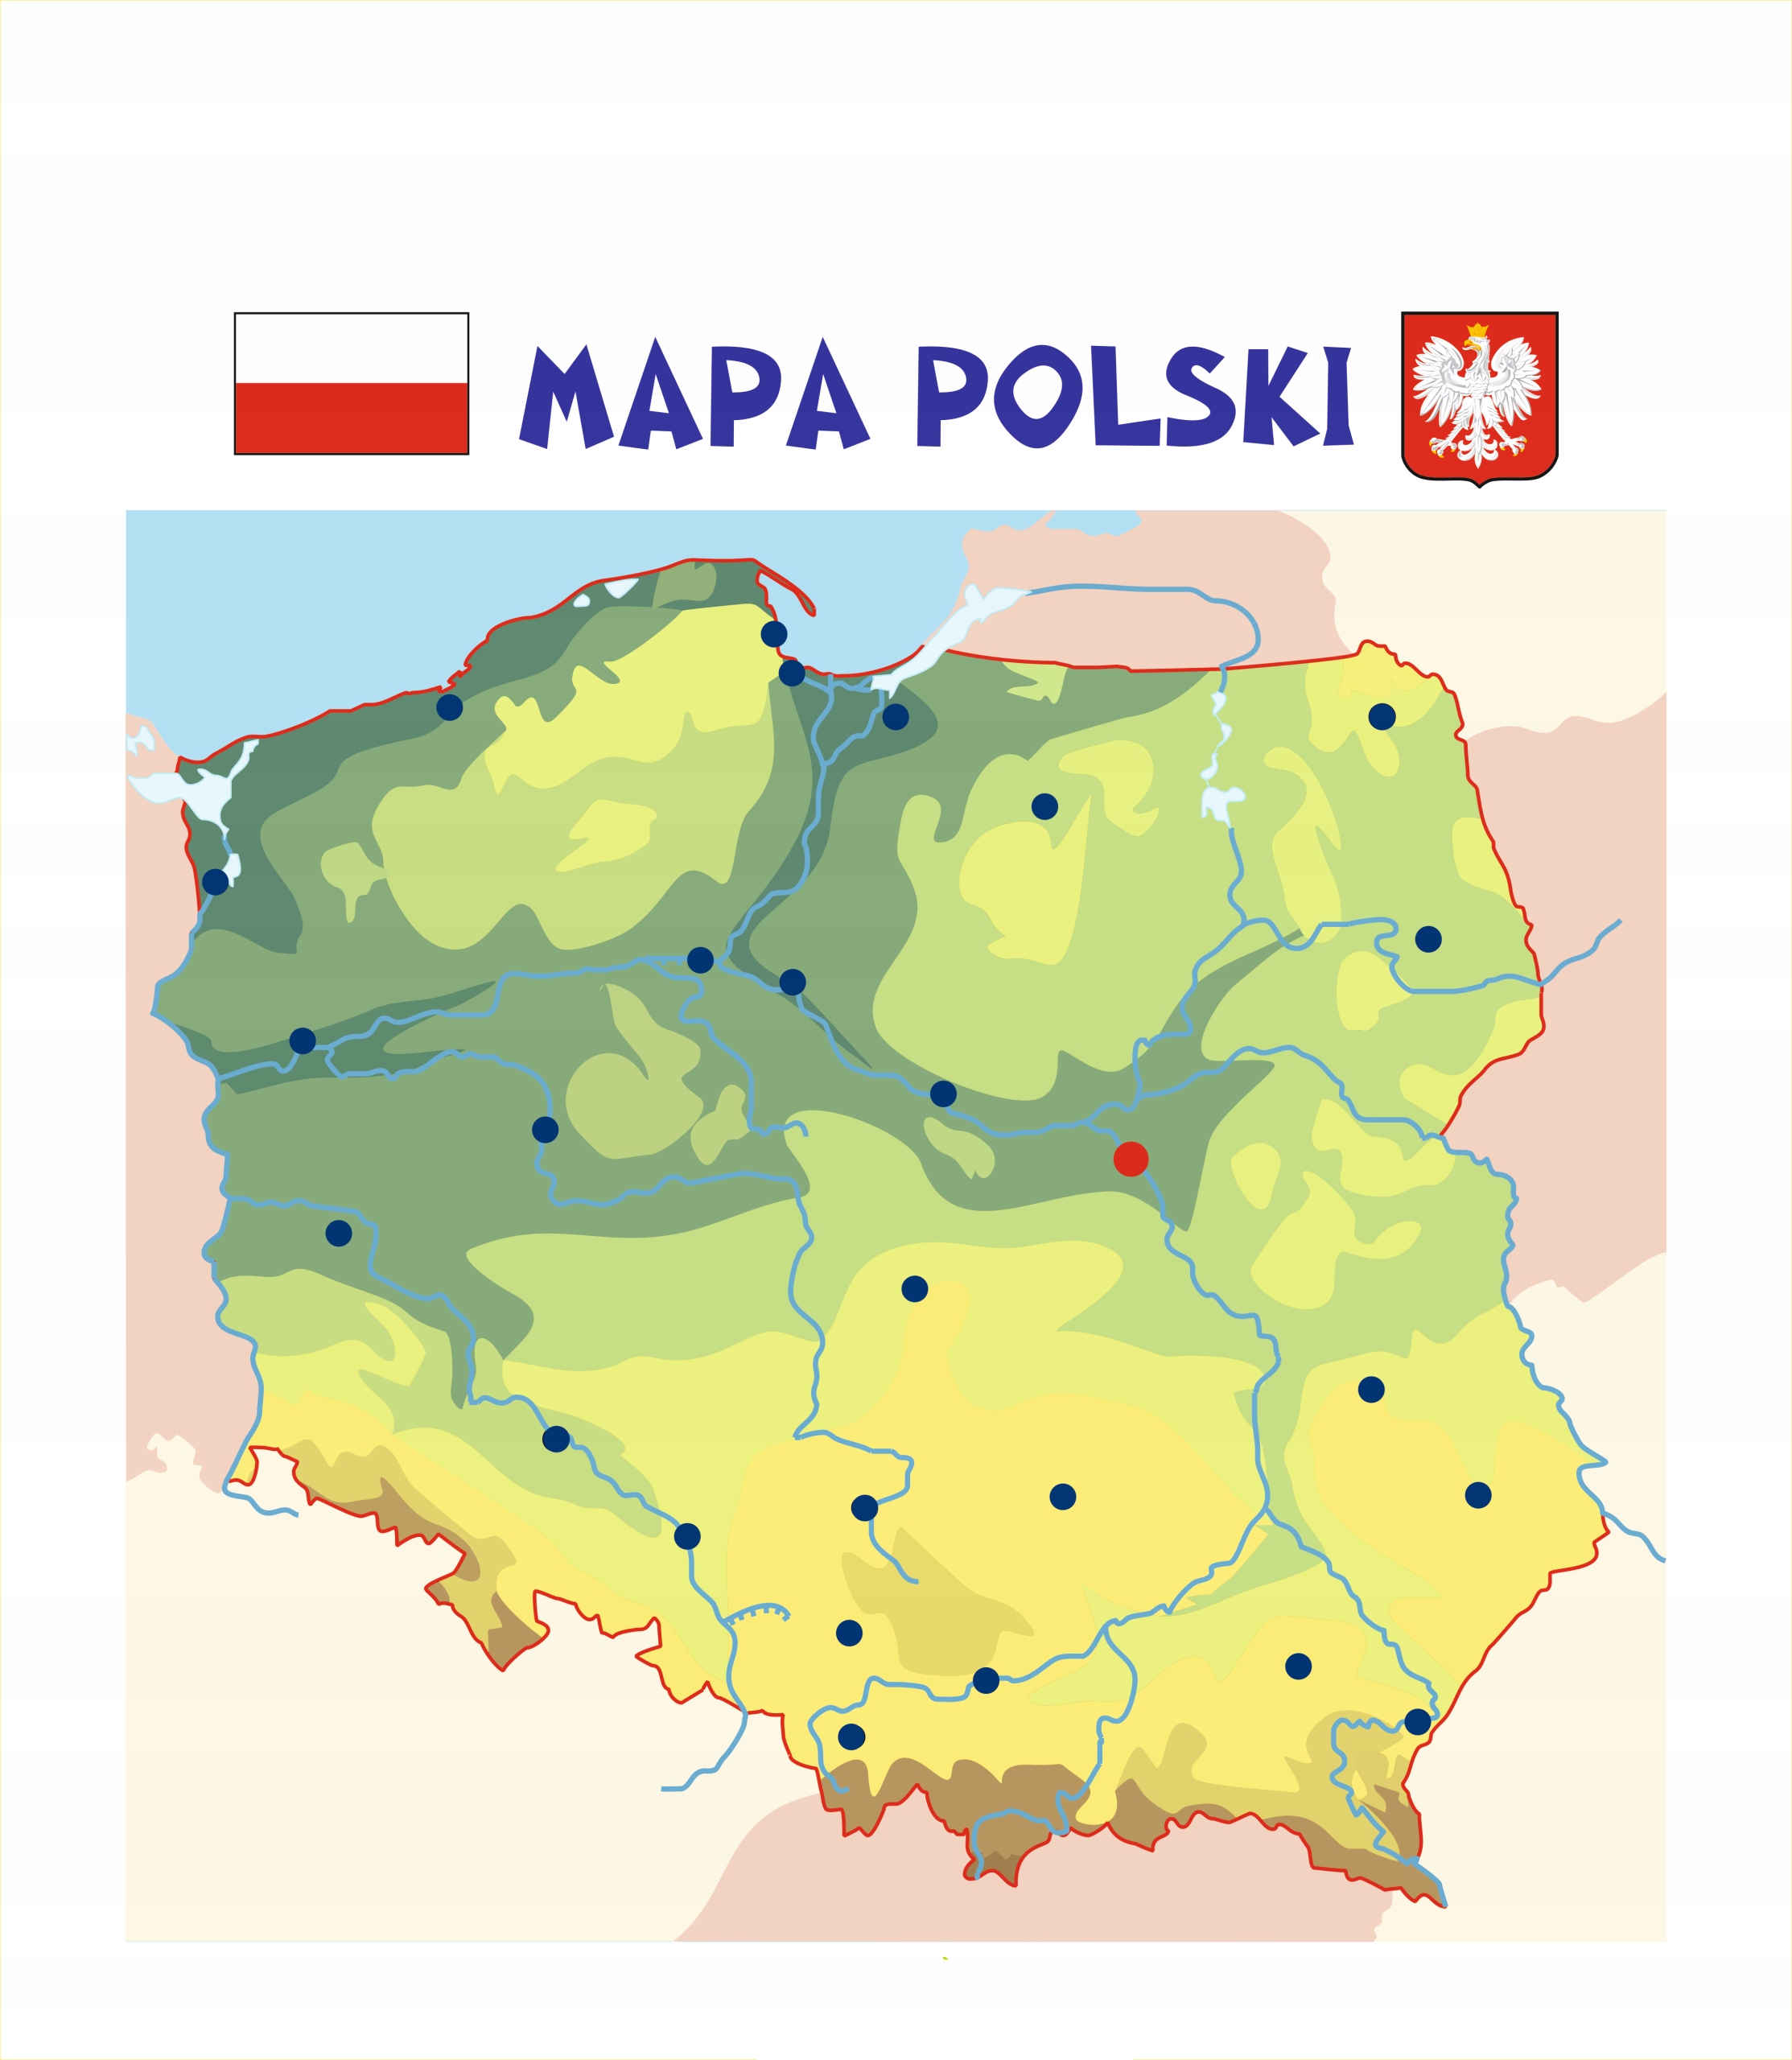 MAPA POLSKI MAGNETYCZNA SUCHOŚCIERALNA DO PISANIA 14050532126 - Allegro.pl